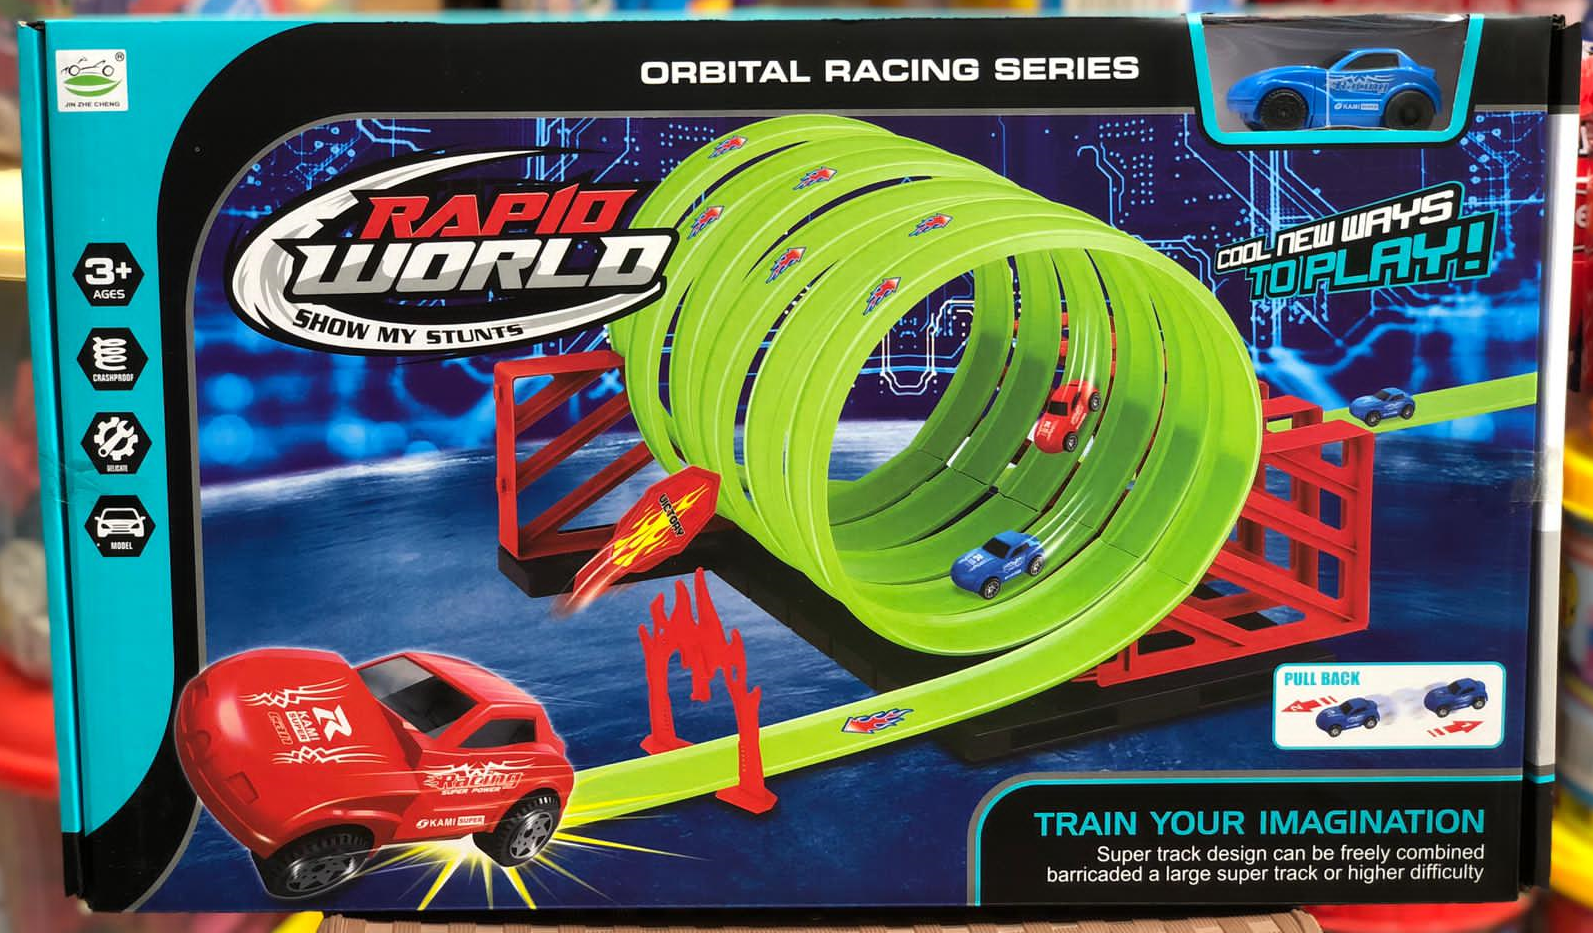 Orbital racing series